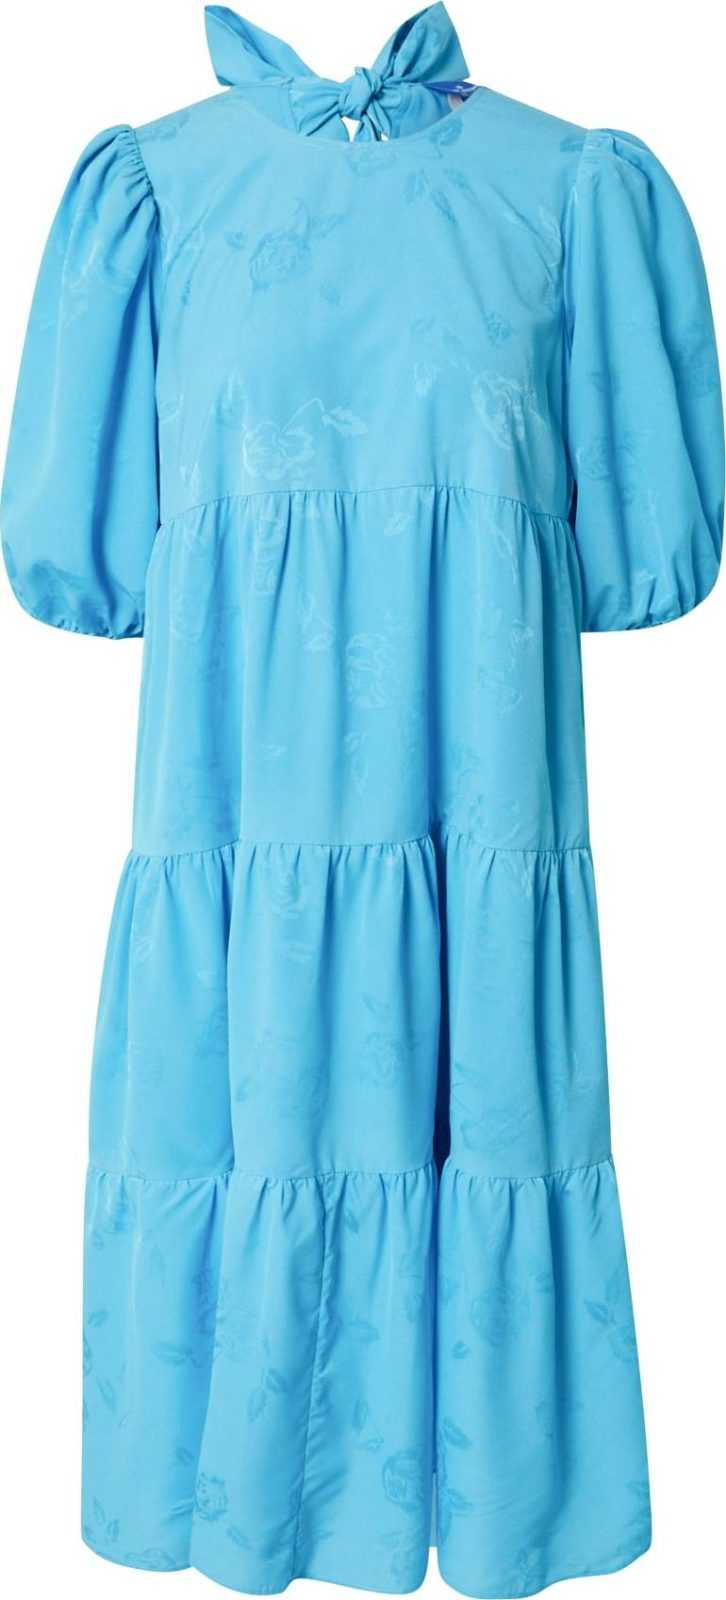 Crās Letní šaty 'Lexicras' modrá